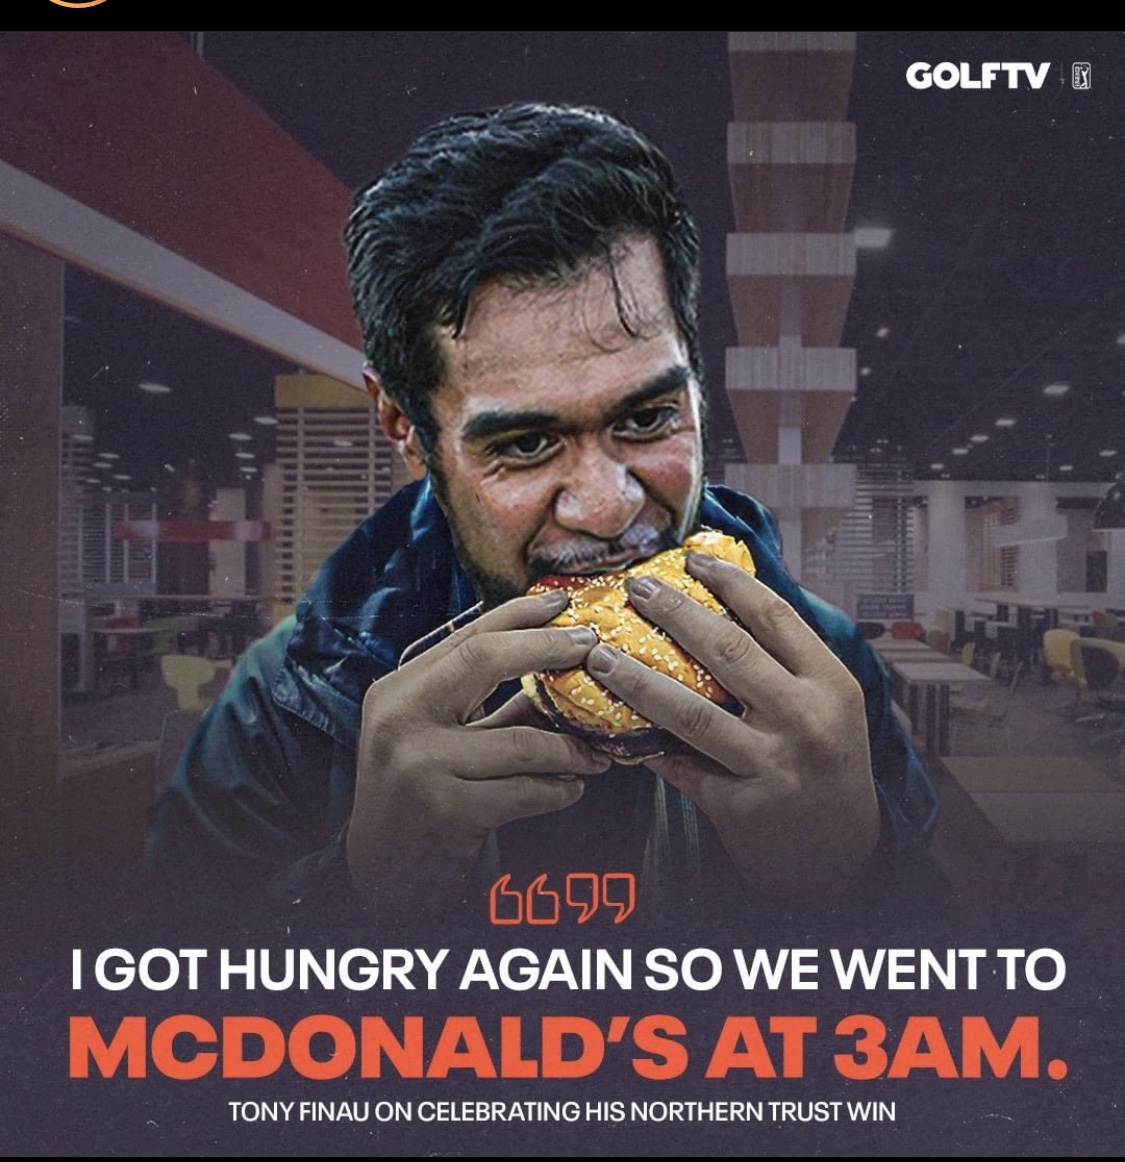 Lĩnh 1,7 triệu đô tiền thưởng, Tony Finau đi ăn McDonald lúc 3 giờ sáng